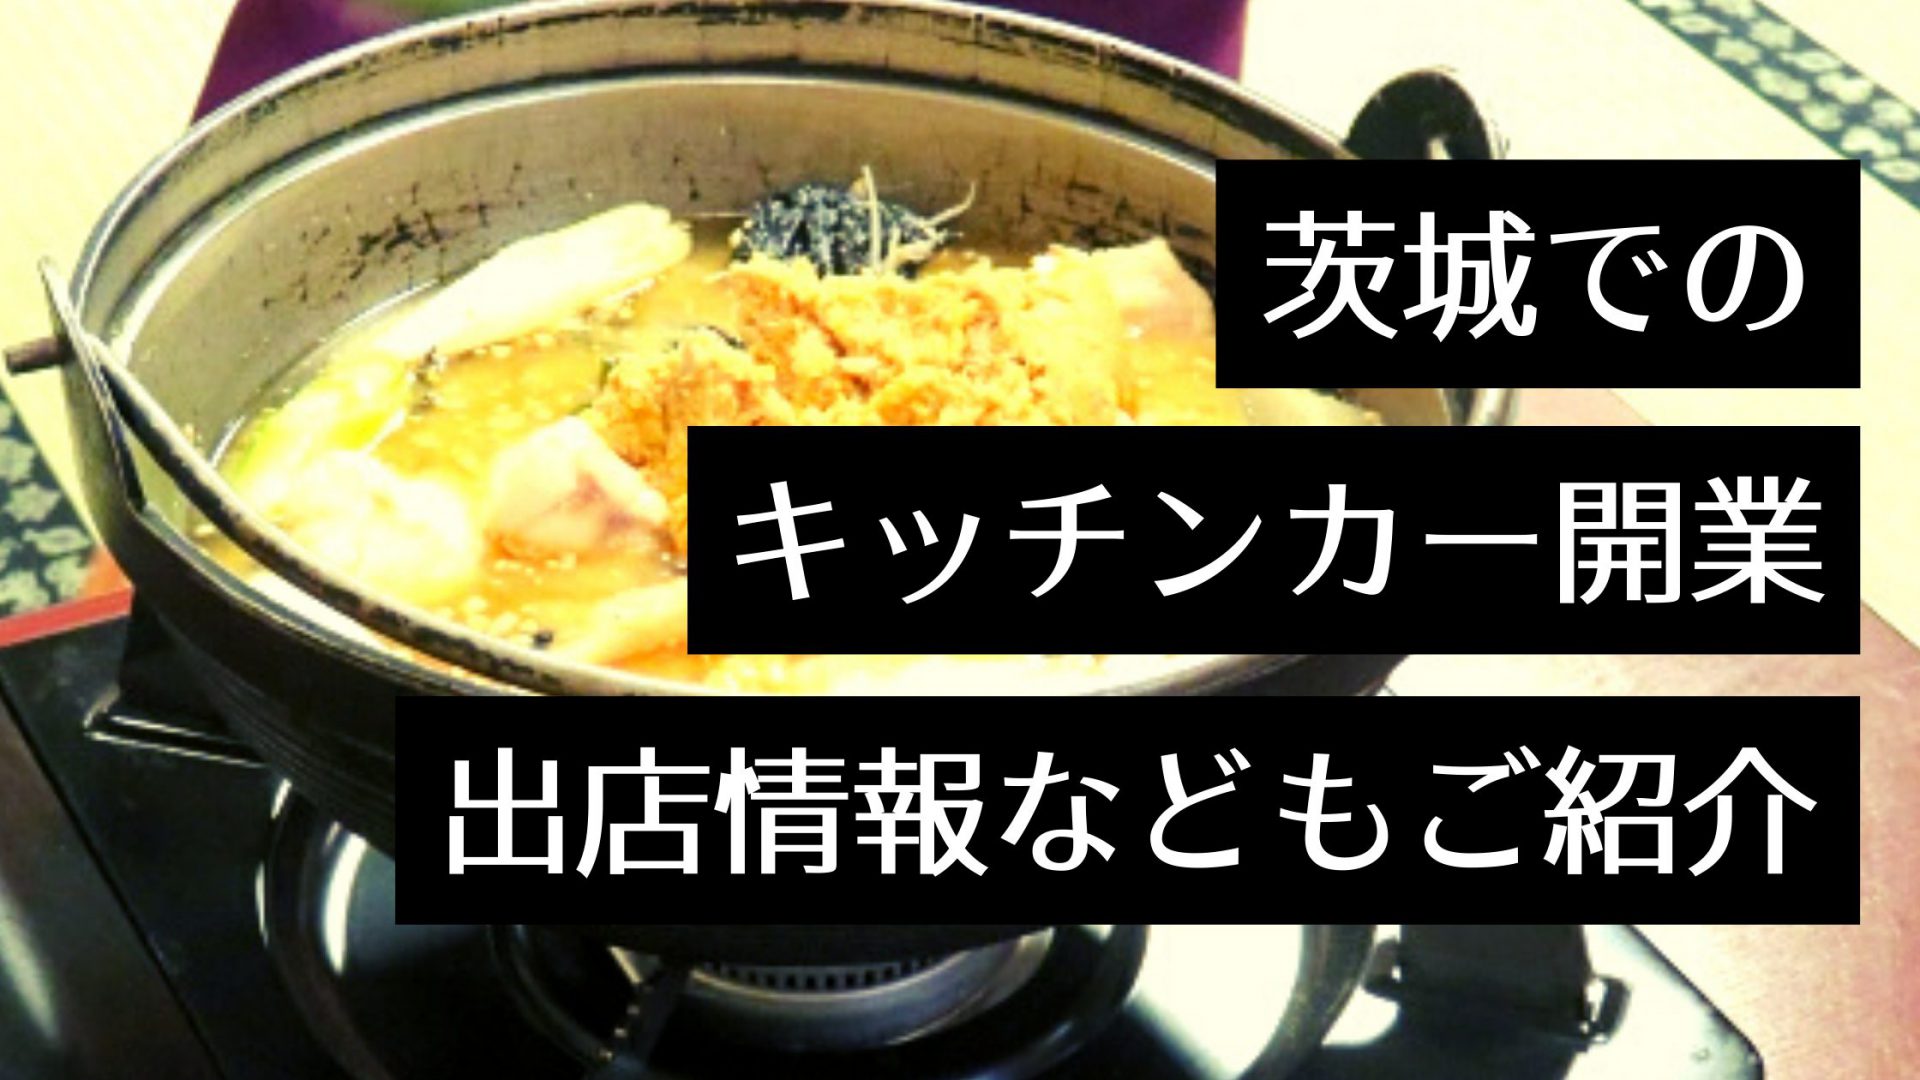 茨城県でキッチンカーを開業したい！イベント出店情報や販売サイト・製作会社をピックアップ